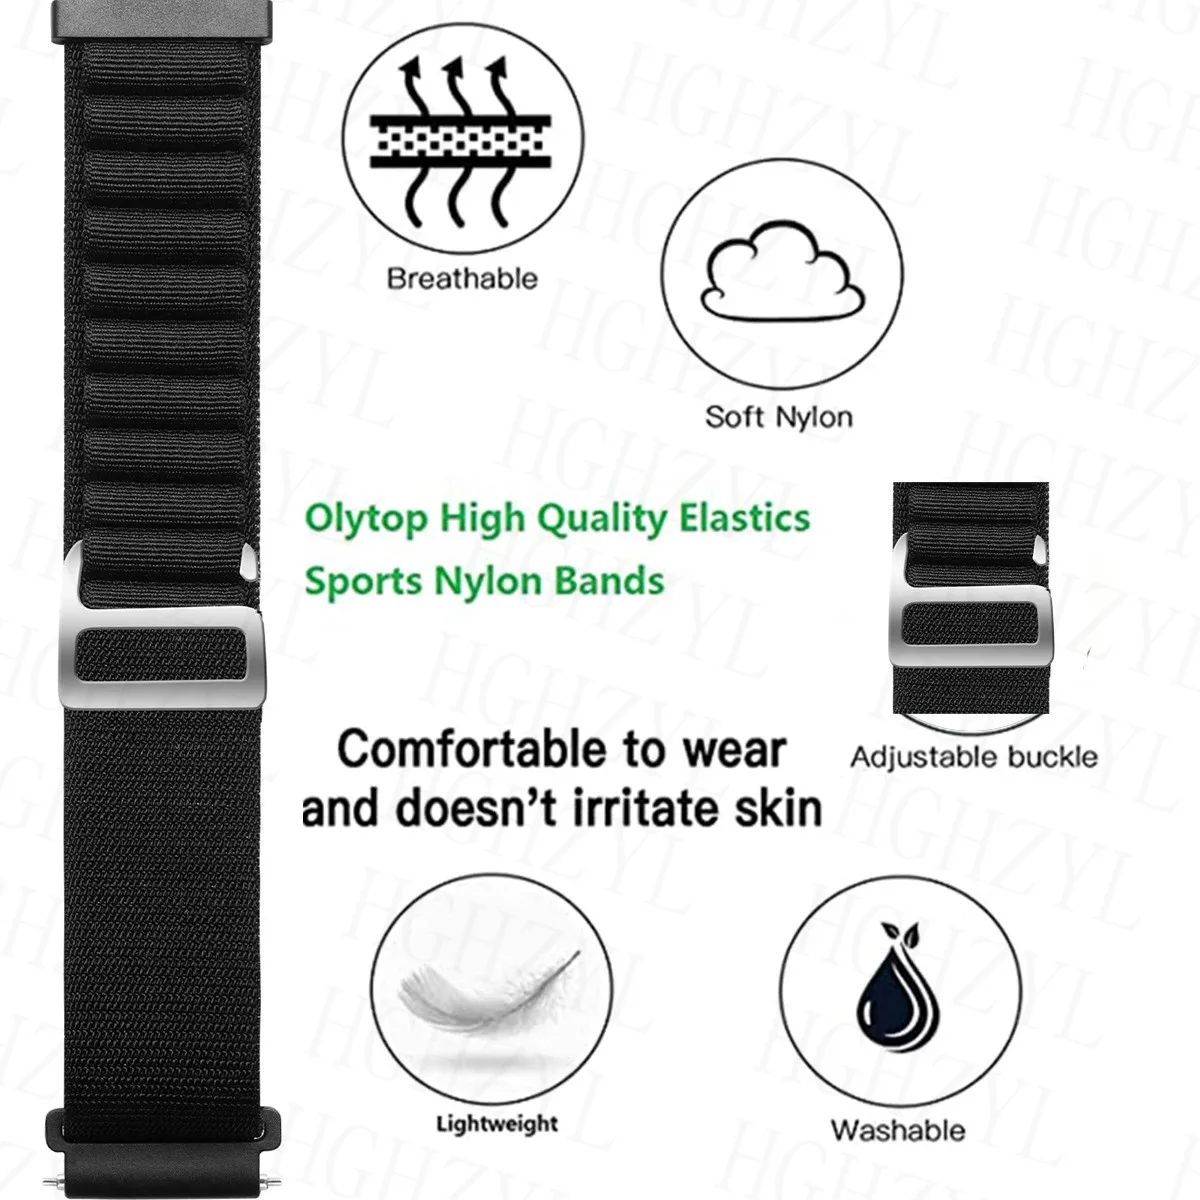 For Xiaomi Mi Watch 2 Lite/Redmi Watch 2 Lite Sport Wrist Belt Band Watch  Strap